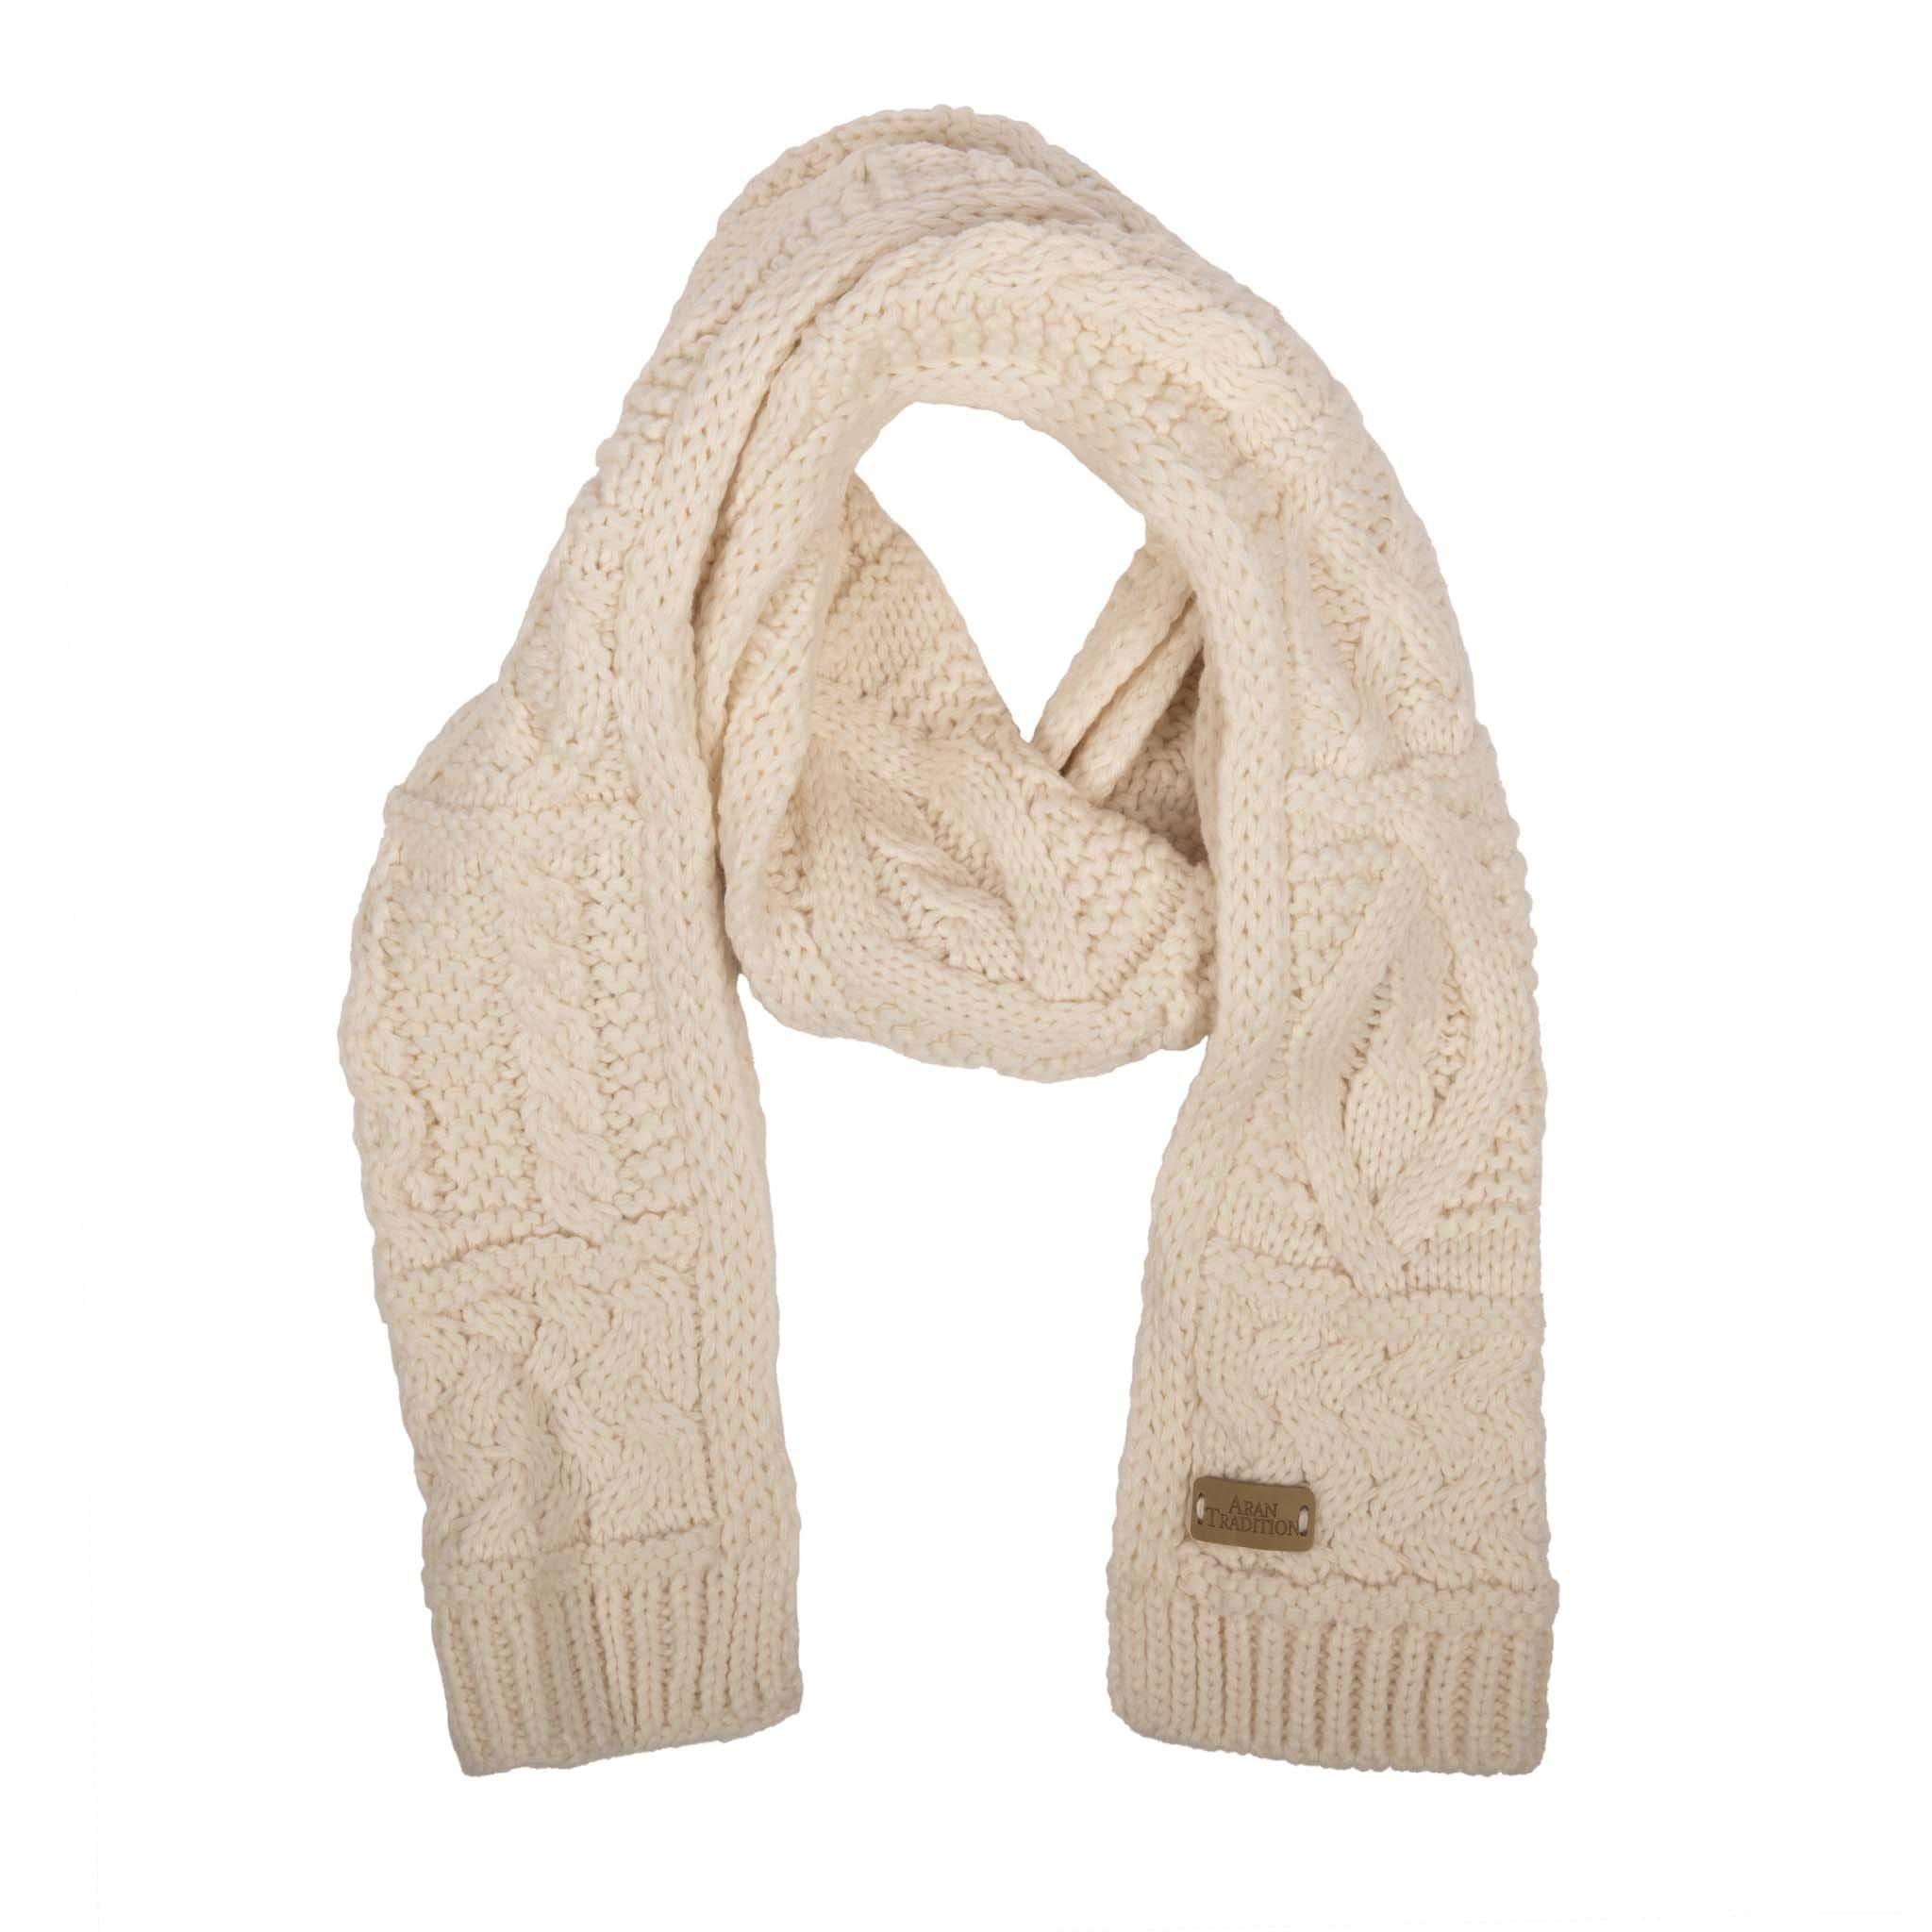 Классический шарф косой вязки Aran Aran Traditions, бежевый